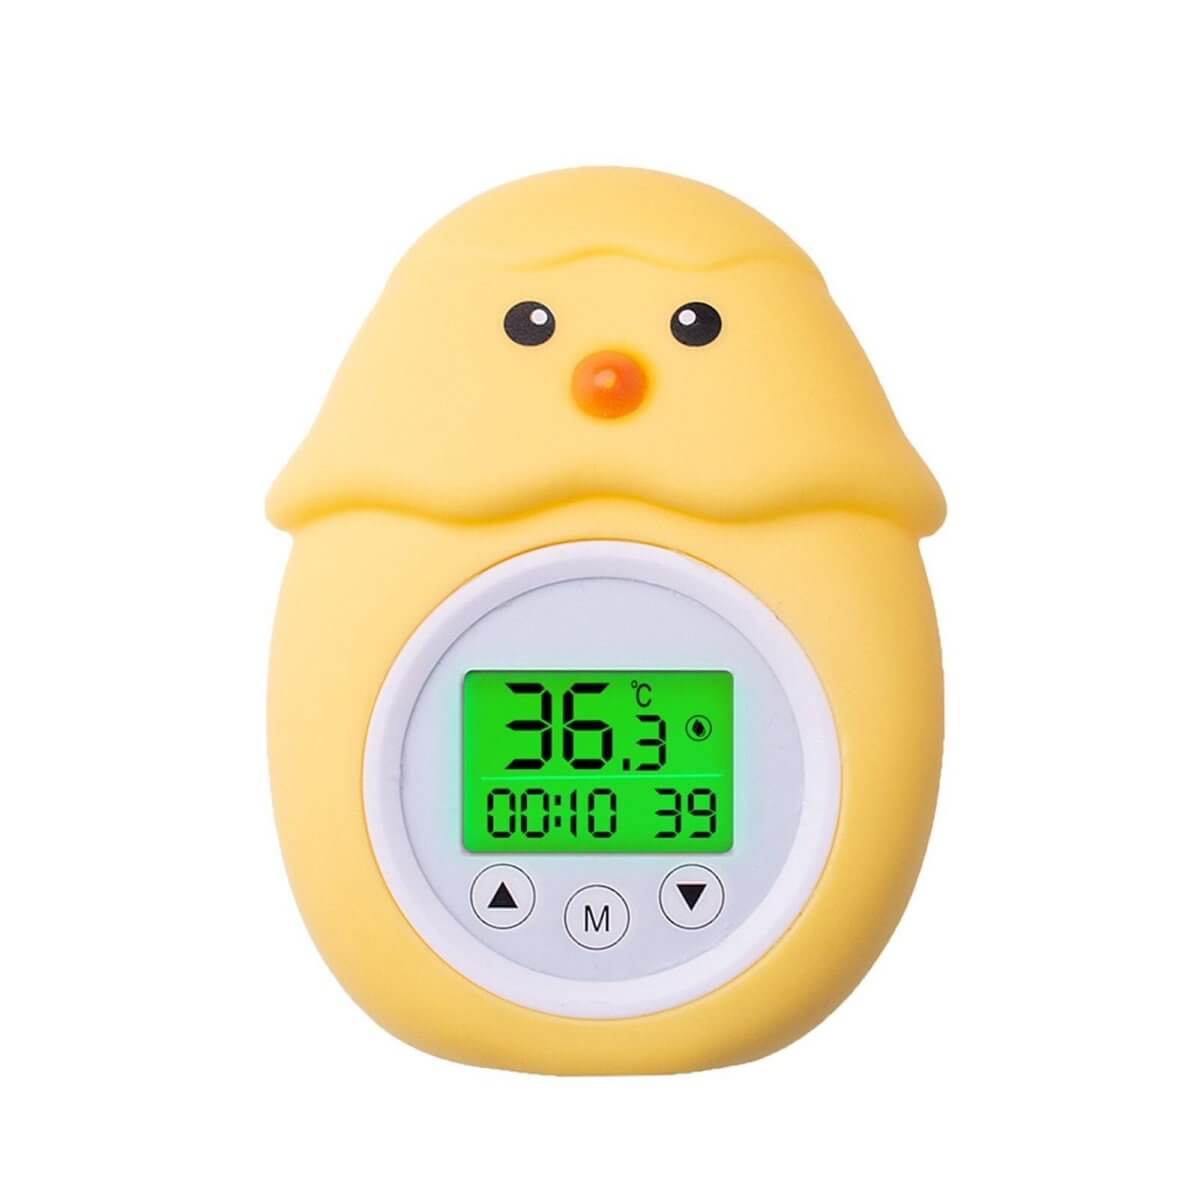 https://www.babybubblestore.com/cdn/shop/products/baby-bath-thermometer-baby-bath-thermometer-baby-bubble-store-chicken-656664.jpg?v=1660132016